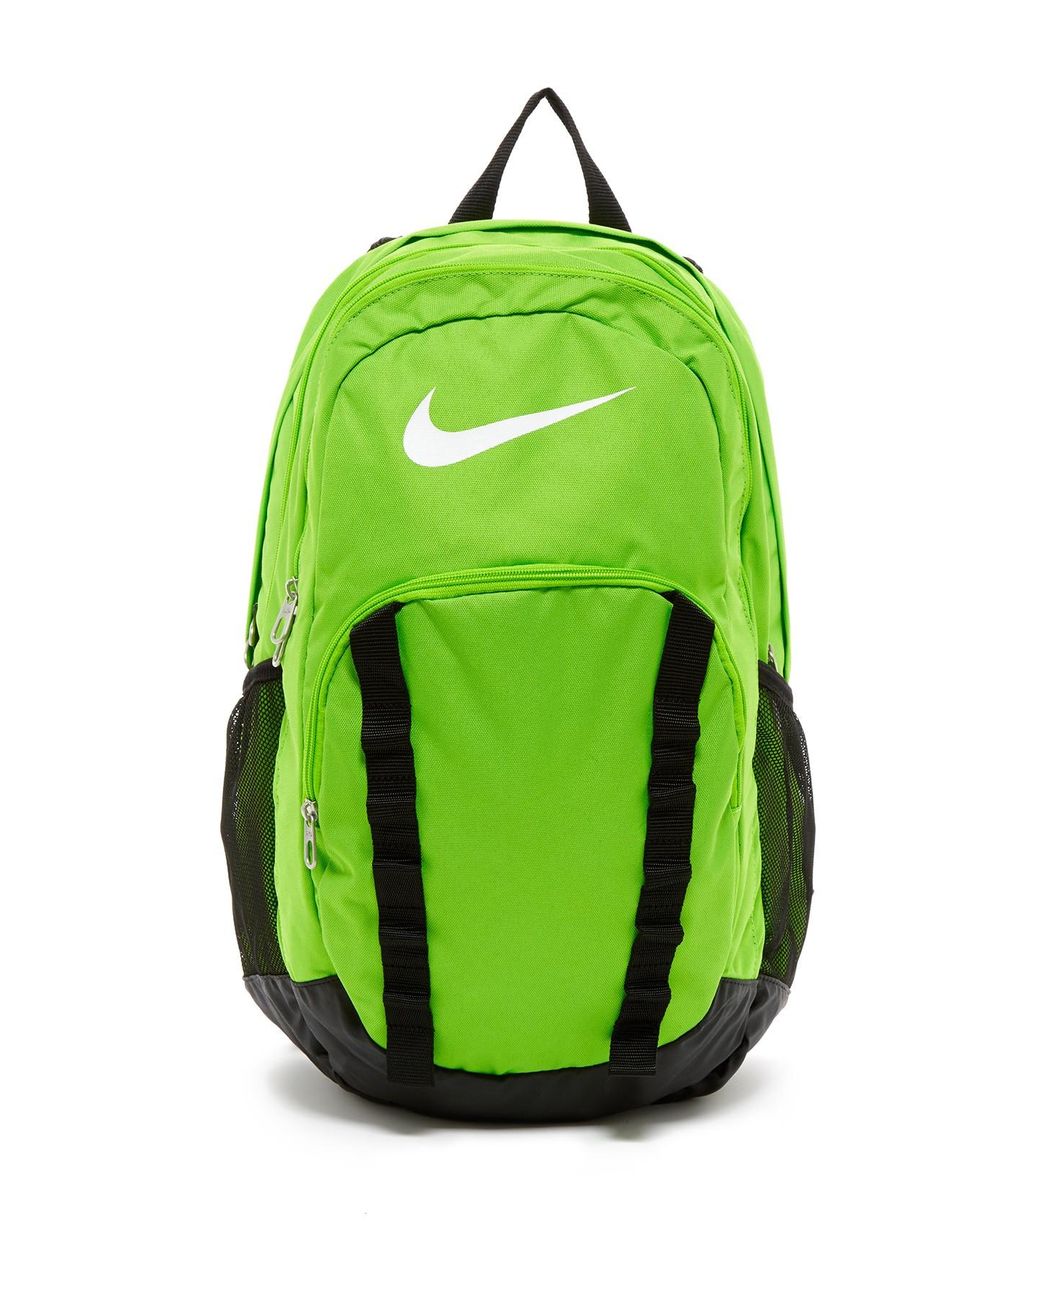 Nike Brasilia 7 Xl Backpack in Green for Men